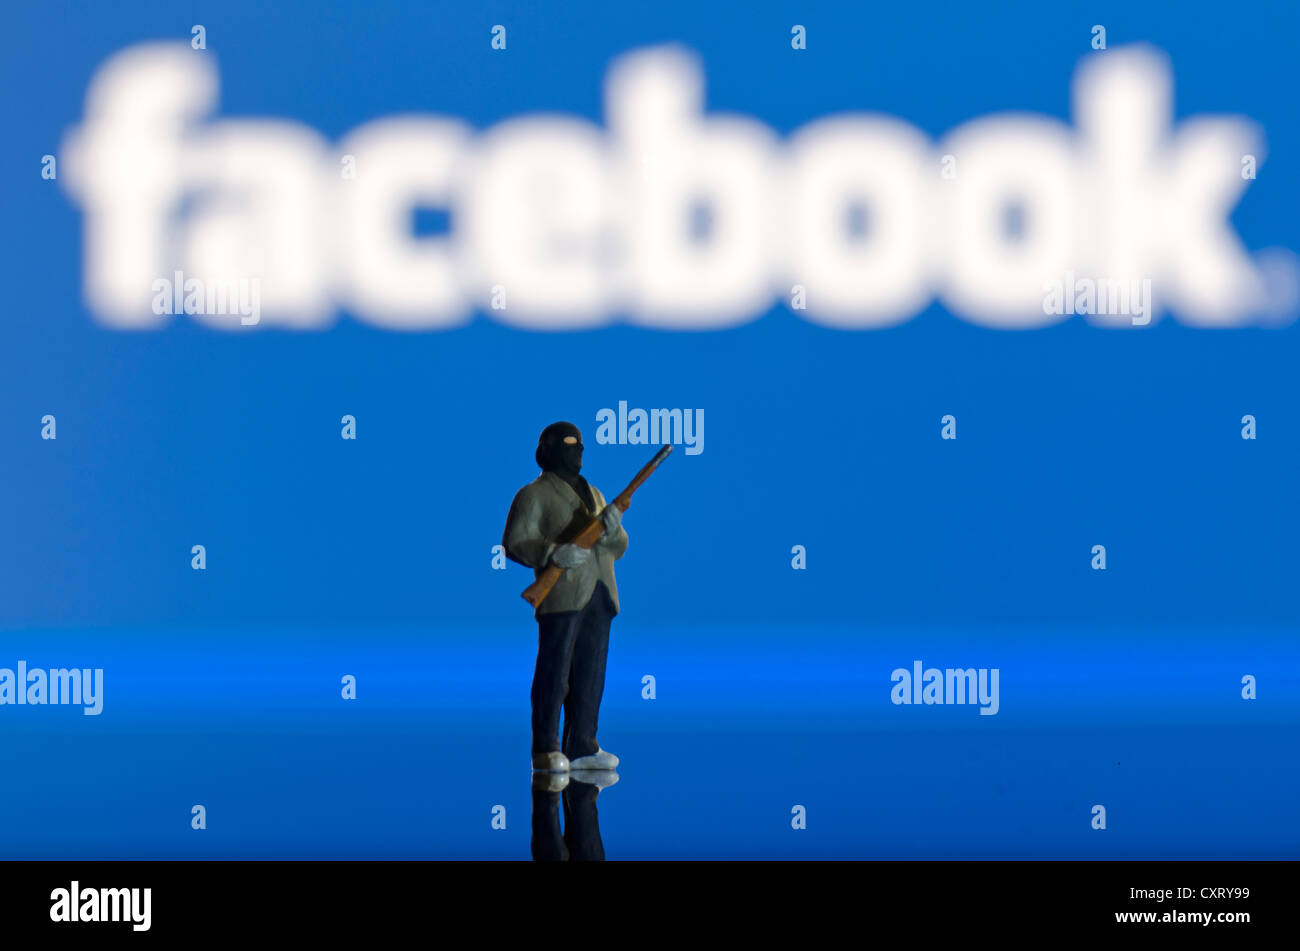 Di islamisti che porta un'arma, miniaturizzato figura in piedi di fronte ad una offuscata logo di Facebook, immagine simbolica Foto Stock